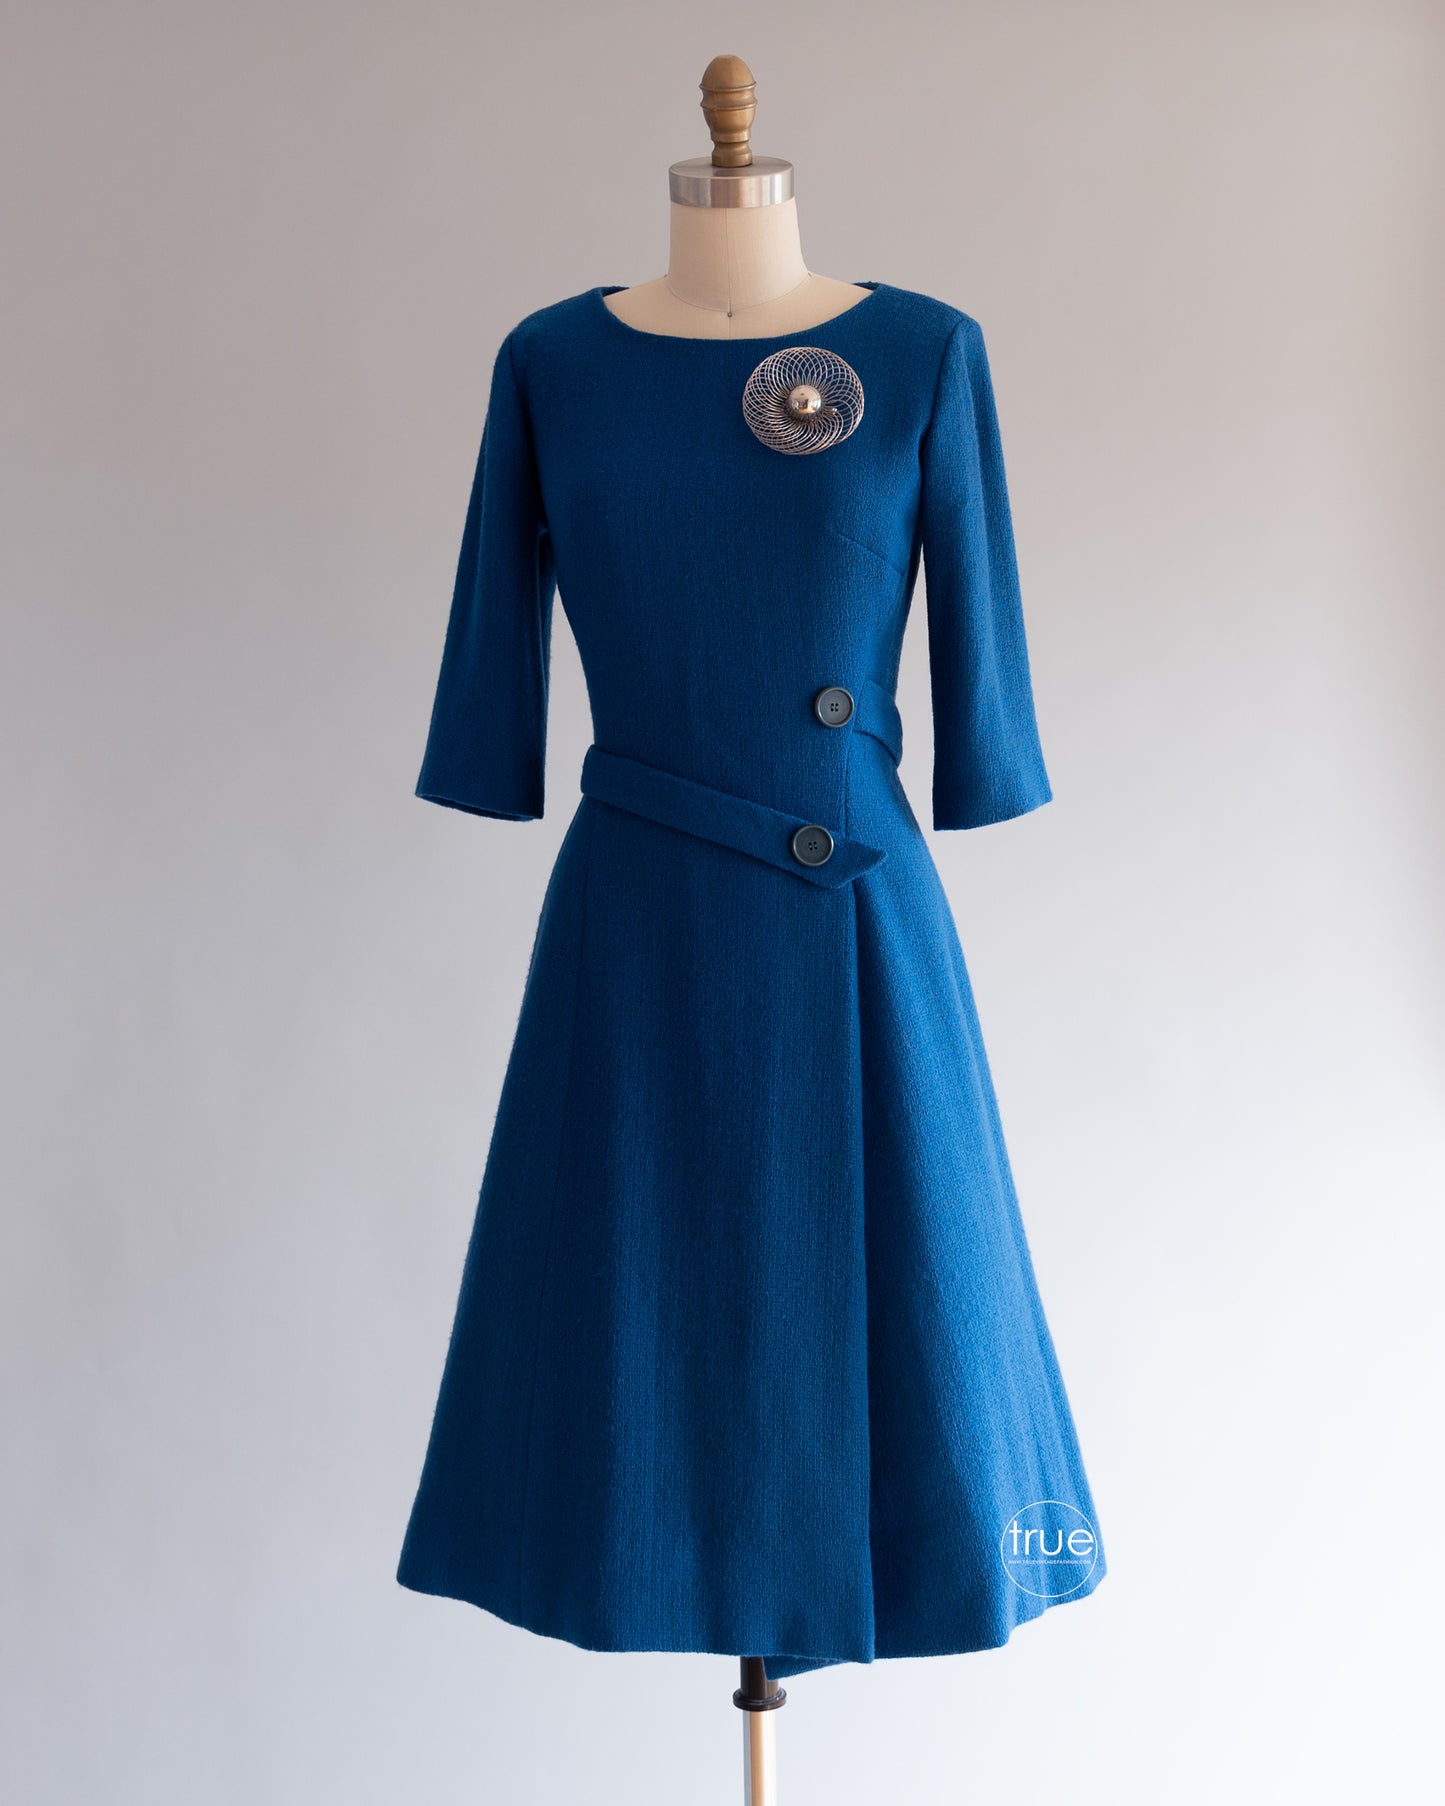 vintage 1960's dress ...timeless Suzy Perette blue bouclé dress